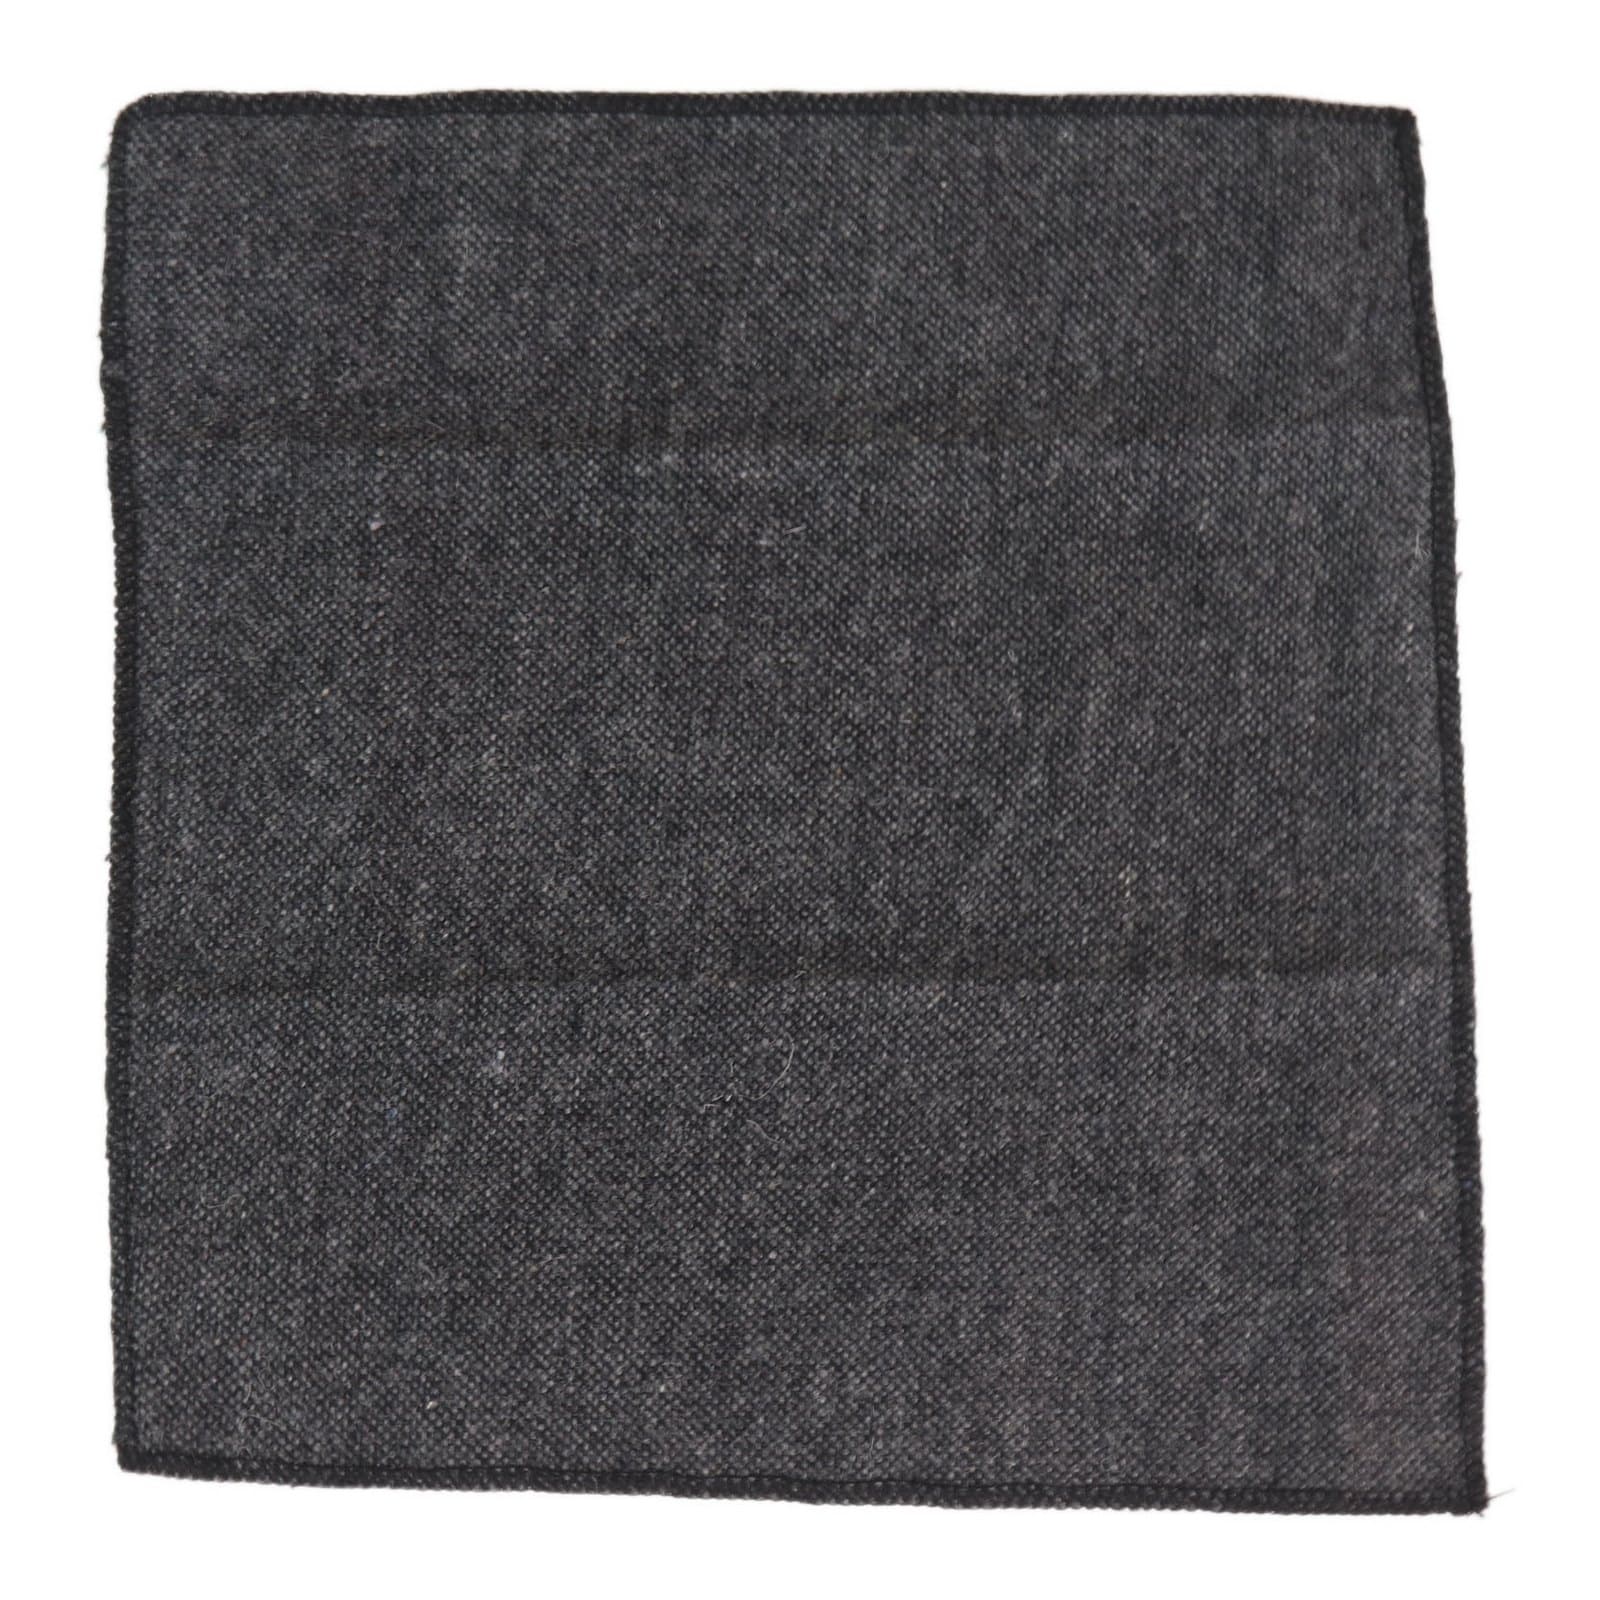 Mens Tie and Hankie Set - Grey Tweed STZ23, One Size: Buy Online ...